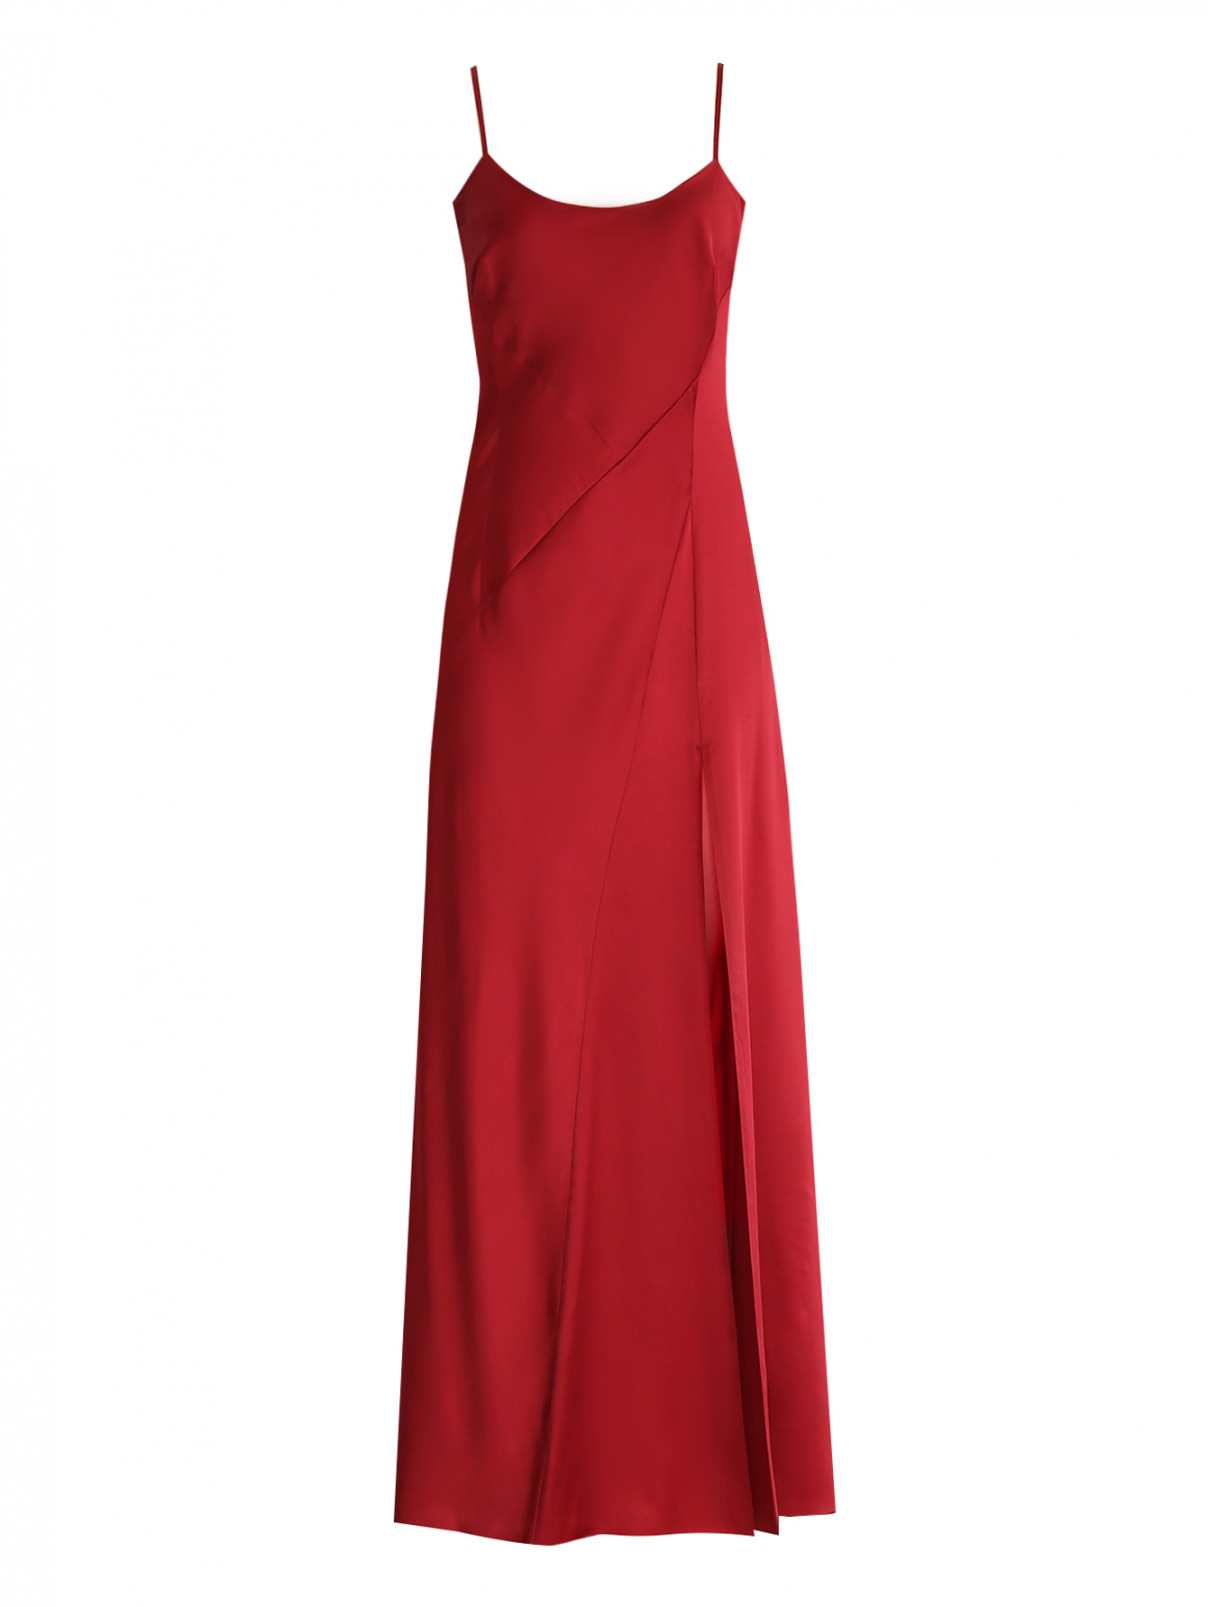 Платье из шелка на бретелях A La Russe  –  Общий вид  – Цвет:  Красный